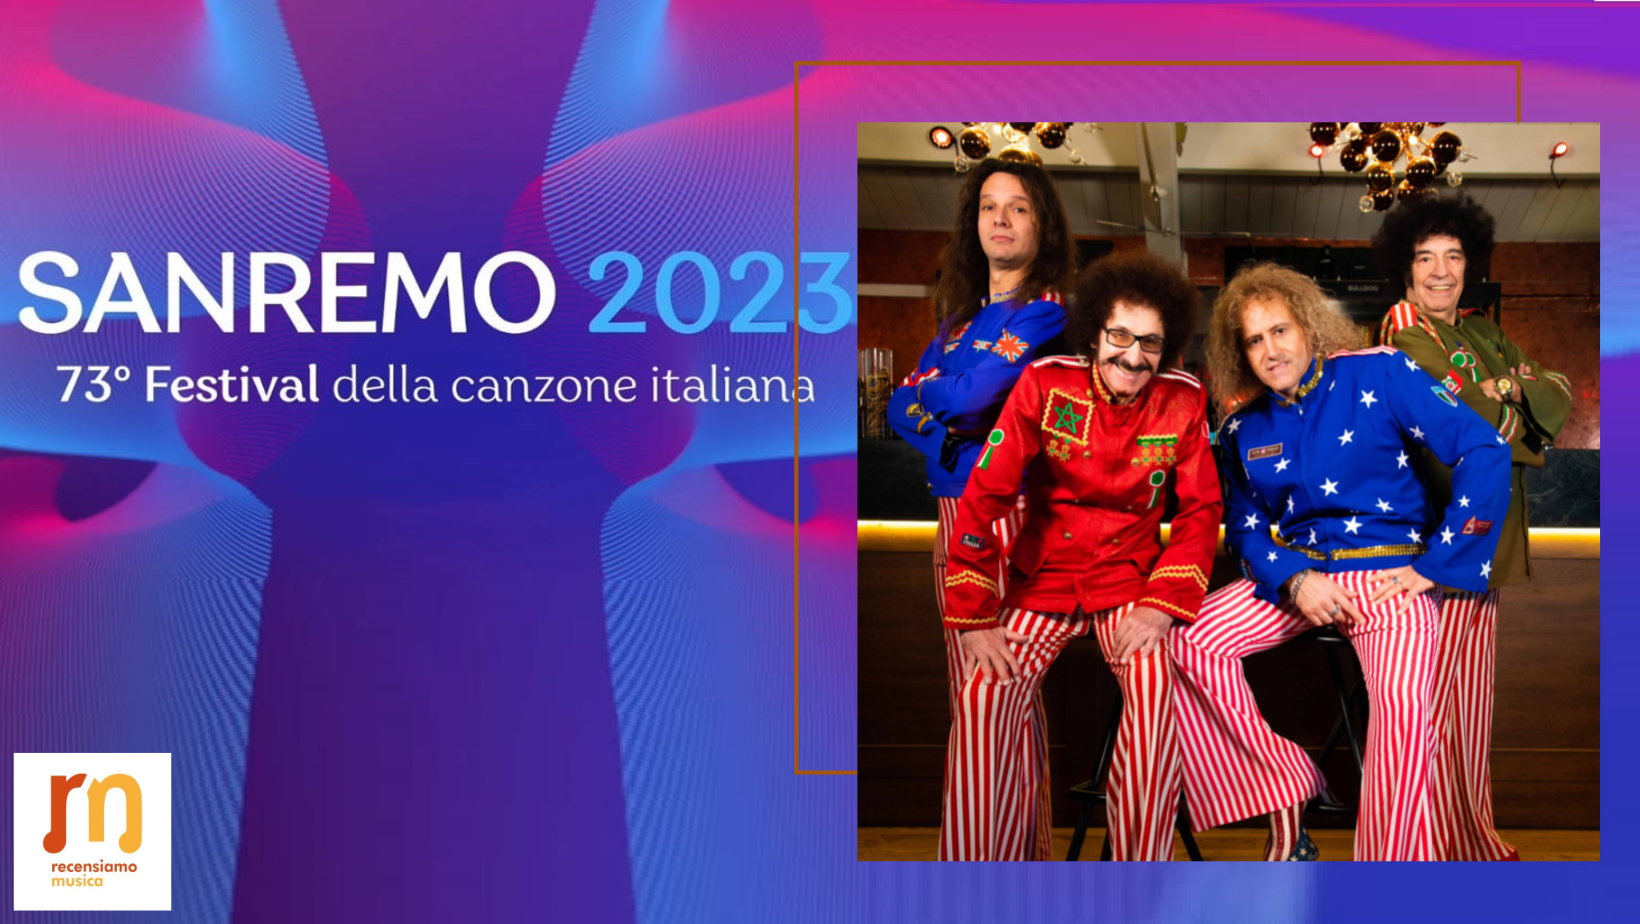 Cugini di Campagna Sanremo 2023